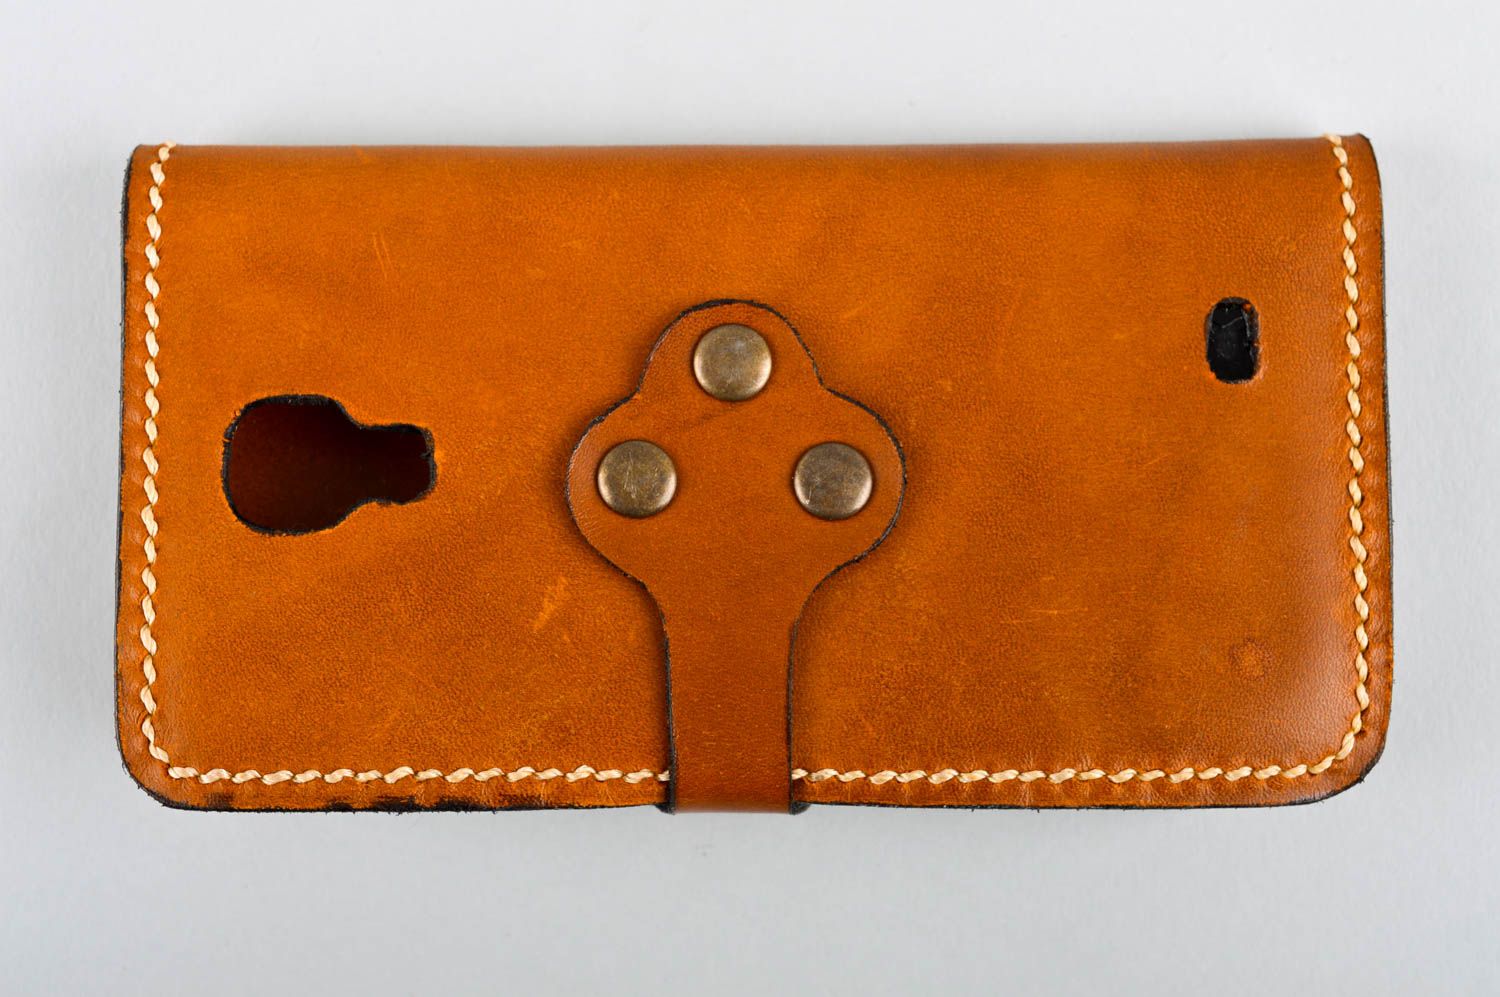 Чехол на телефон хэнд мэйд аксессуар для смартфона кожаный чехол коричневый фото 3